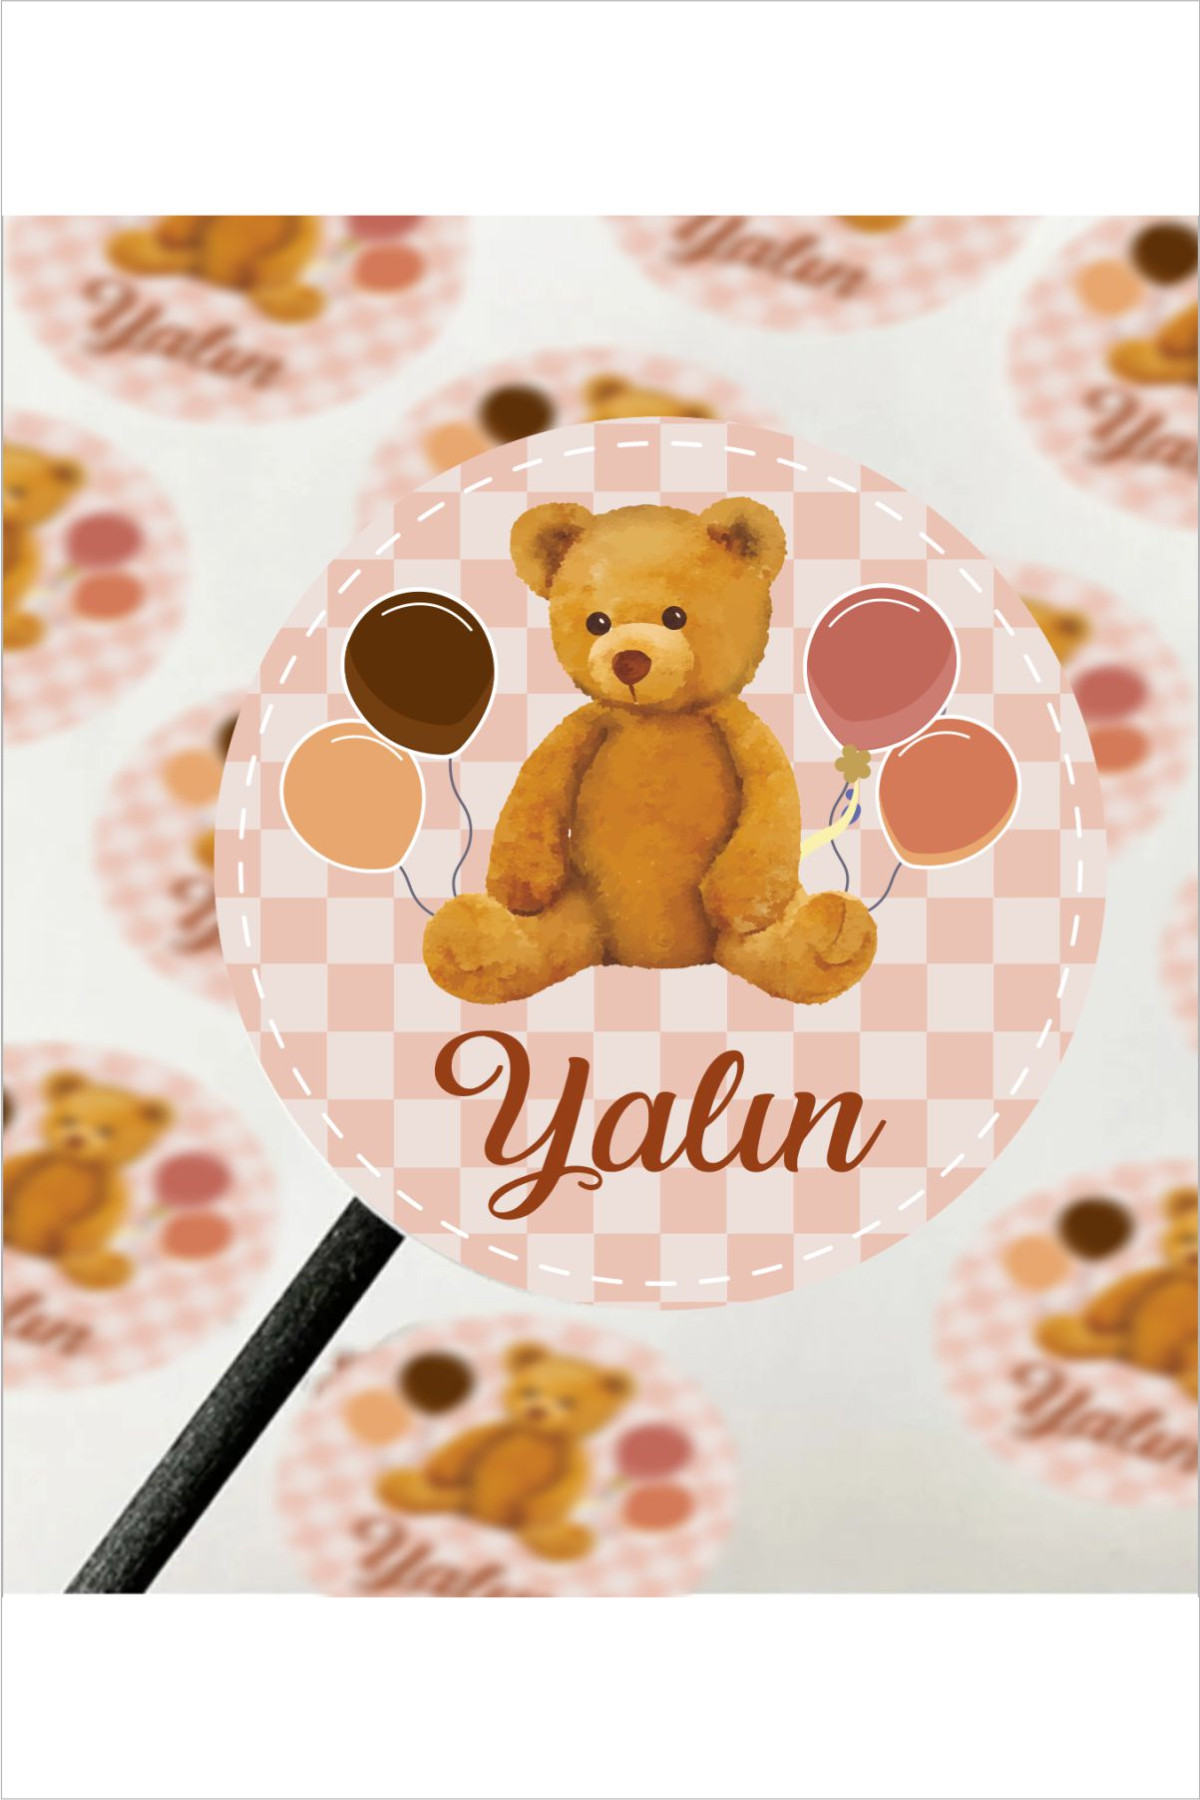 İsimli Bebek Etiketi- Doğum günü Etiketi 4x4 cm 96 Adet - Bear Balloon